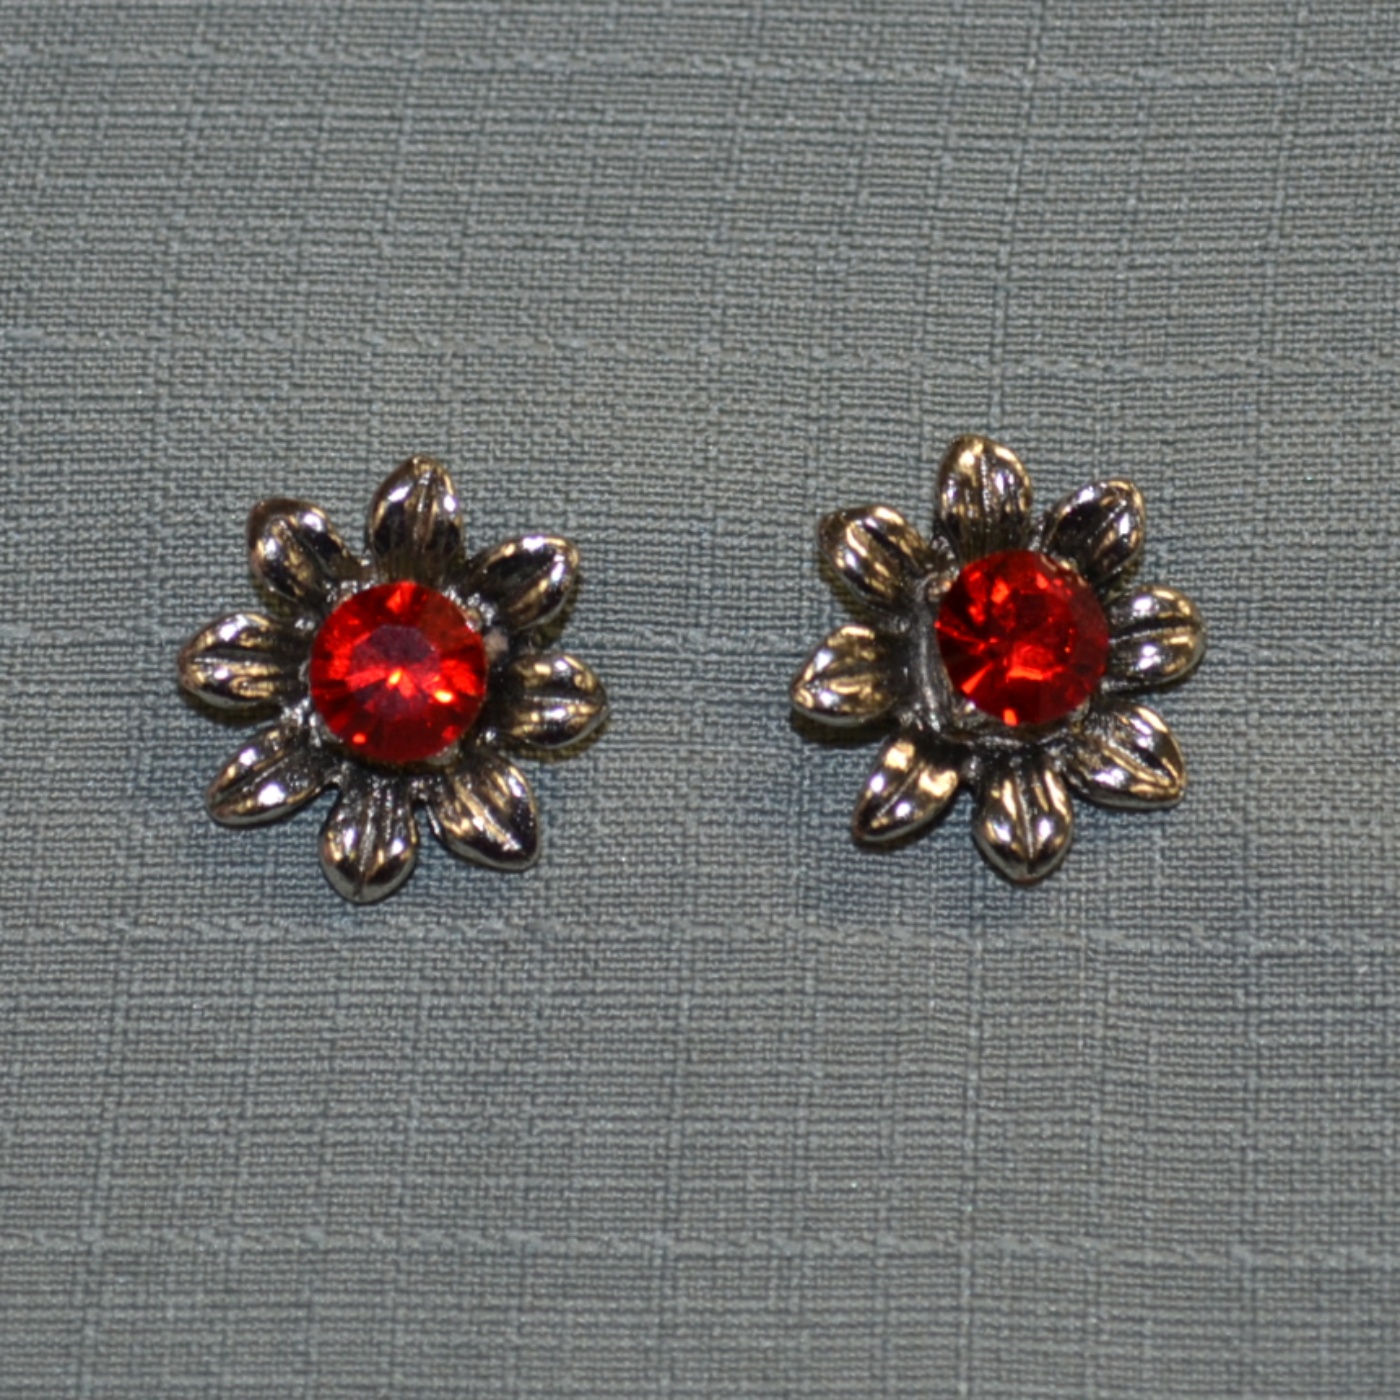 Ruby flower earrings.